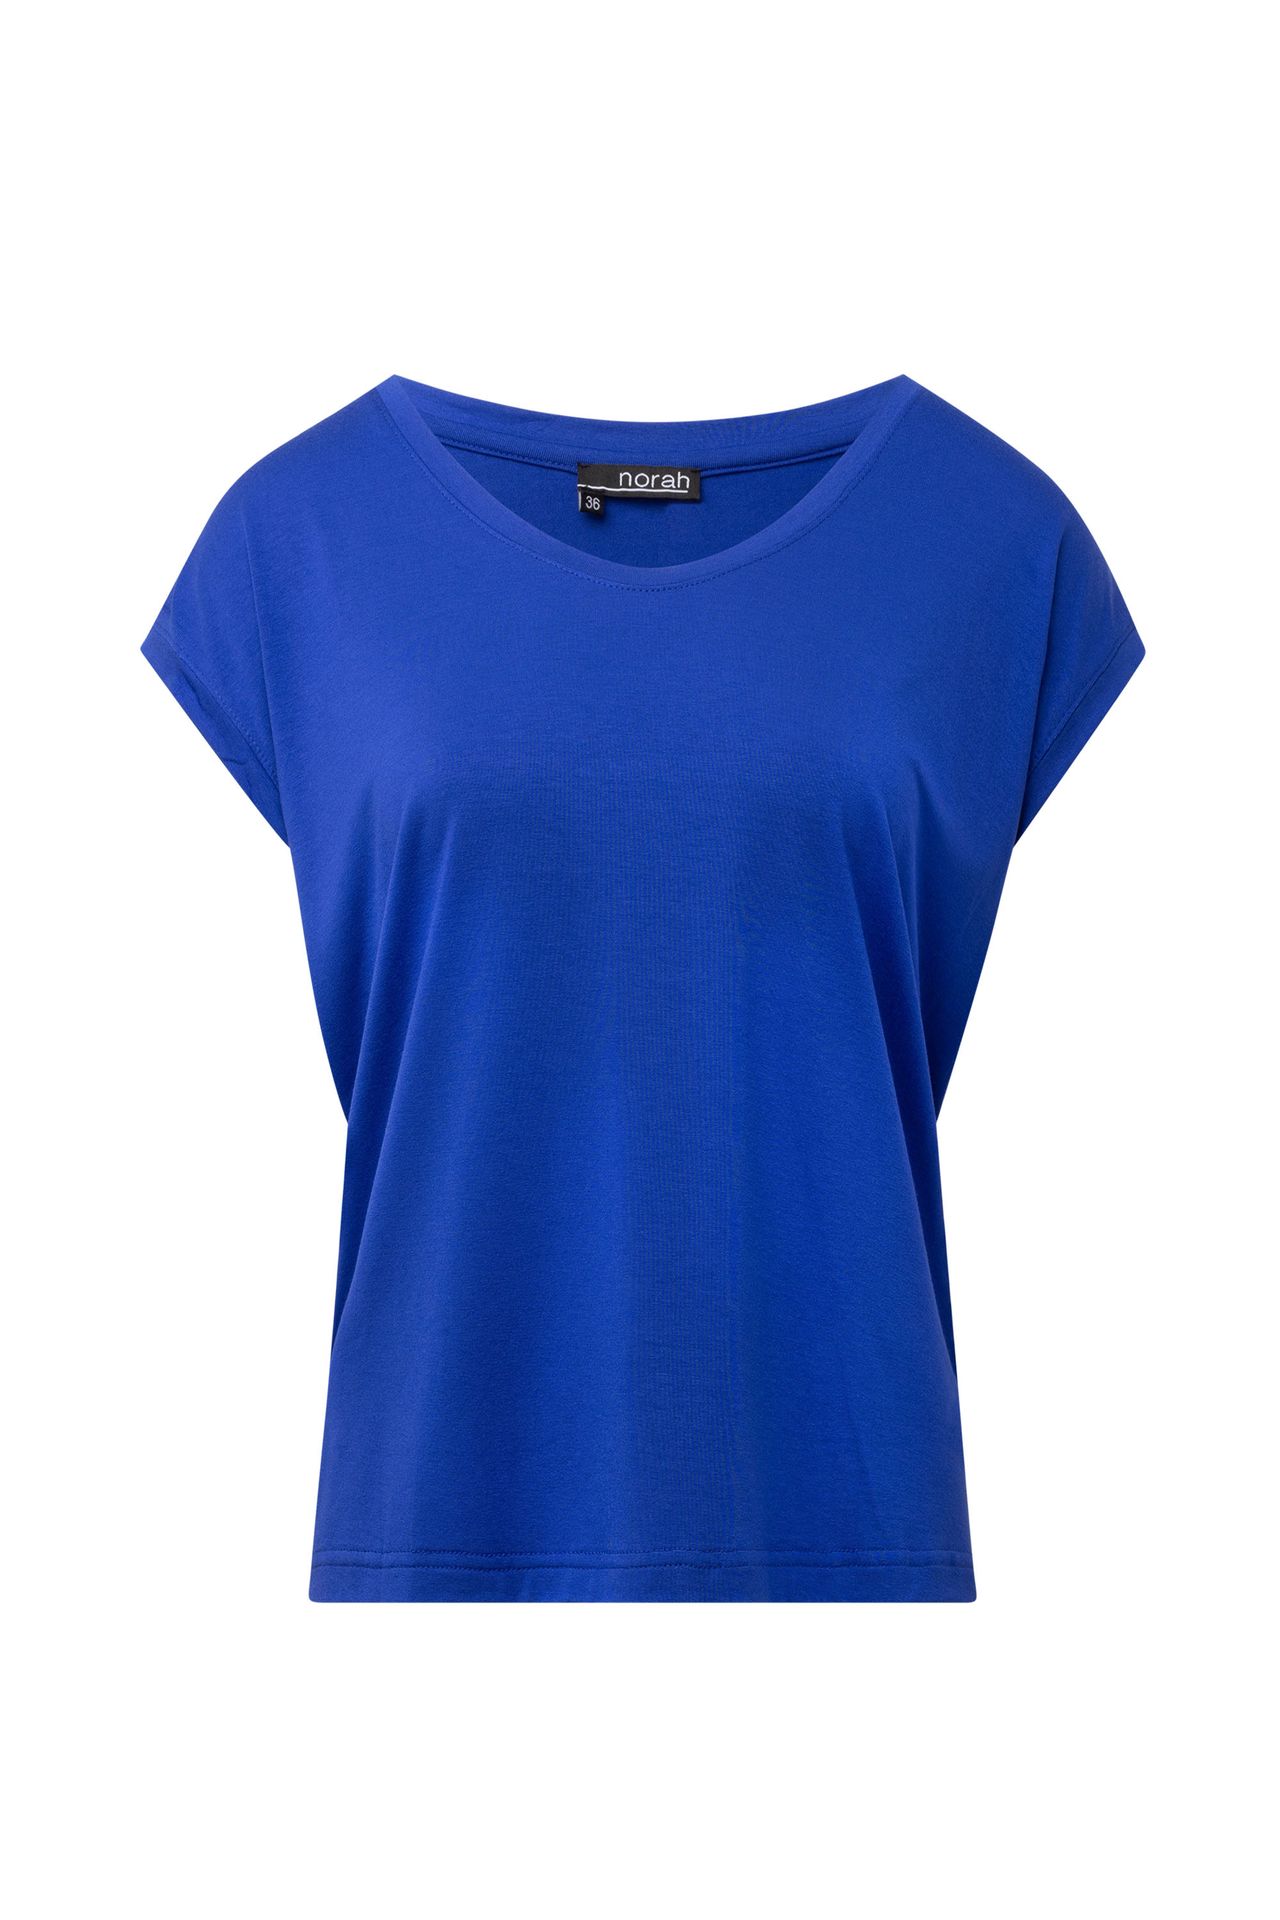 Norah Kobaltblauw shirt cobalt 214843-468